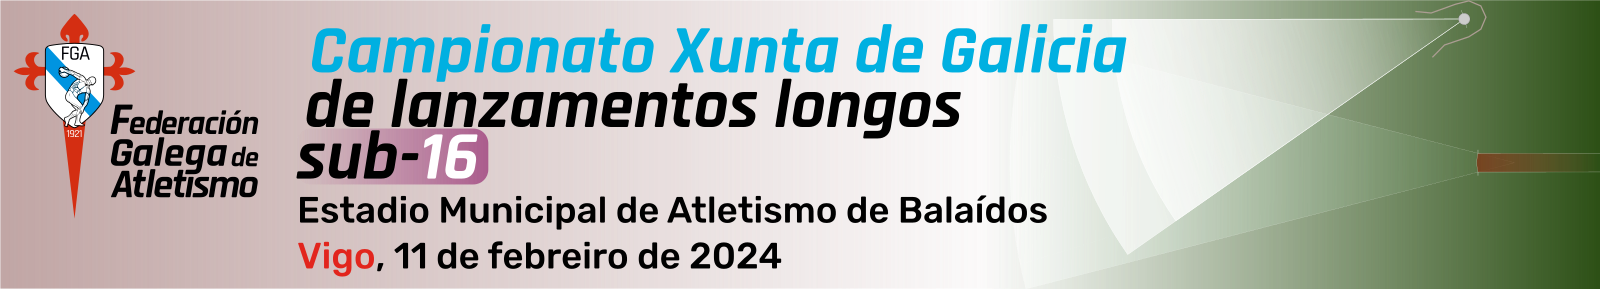  VIII Campionato Xunta de Galicia de.  Estadio Municipal de Atletismo de Balaídos, 11 febreiro 2024